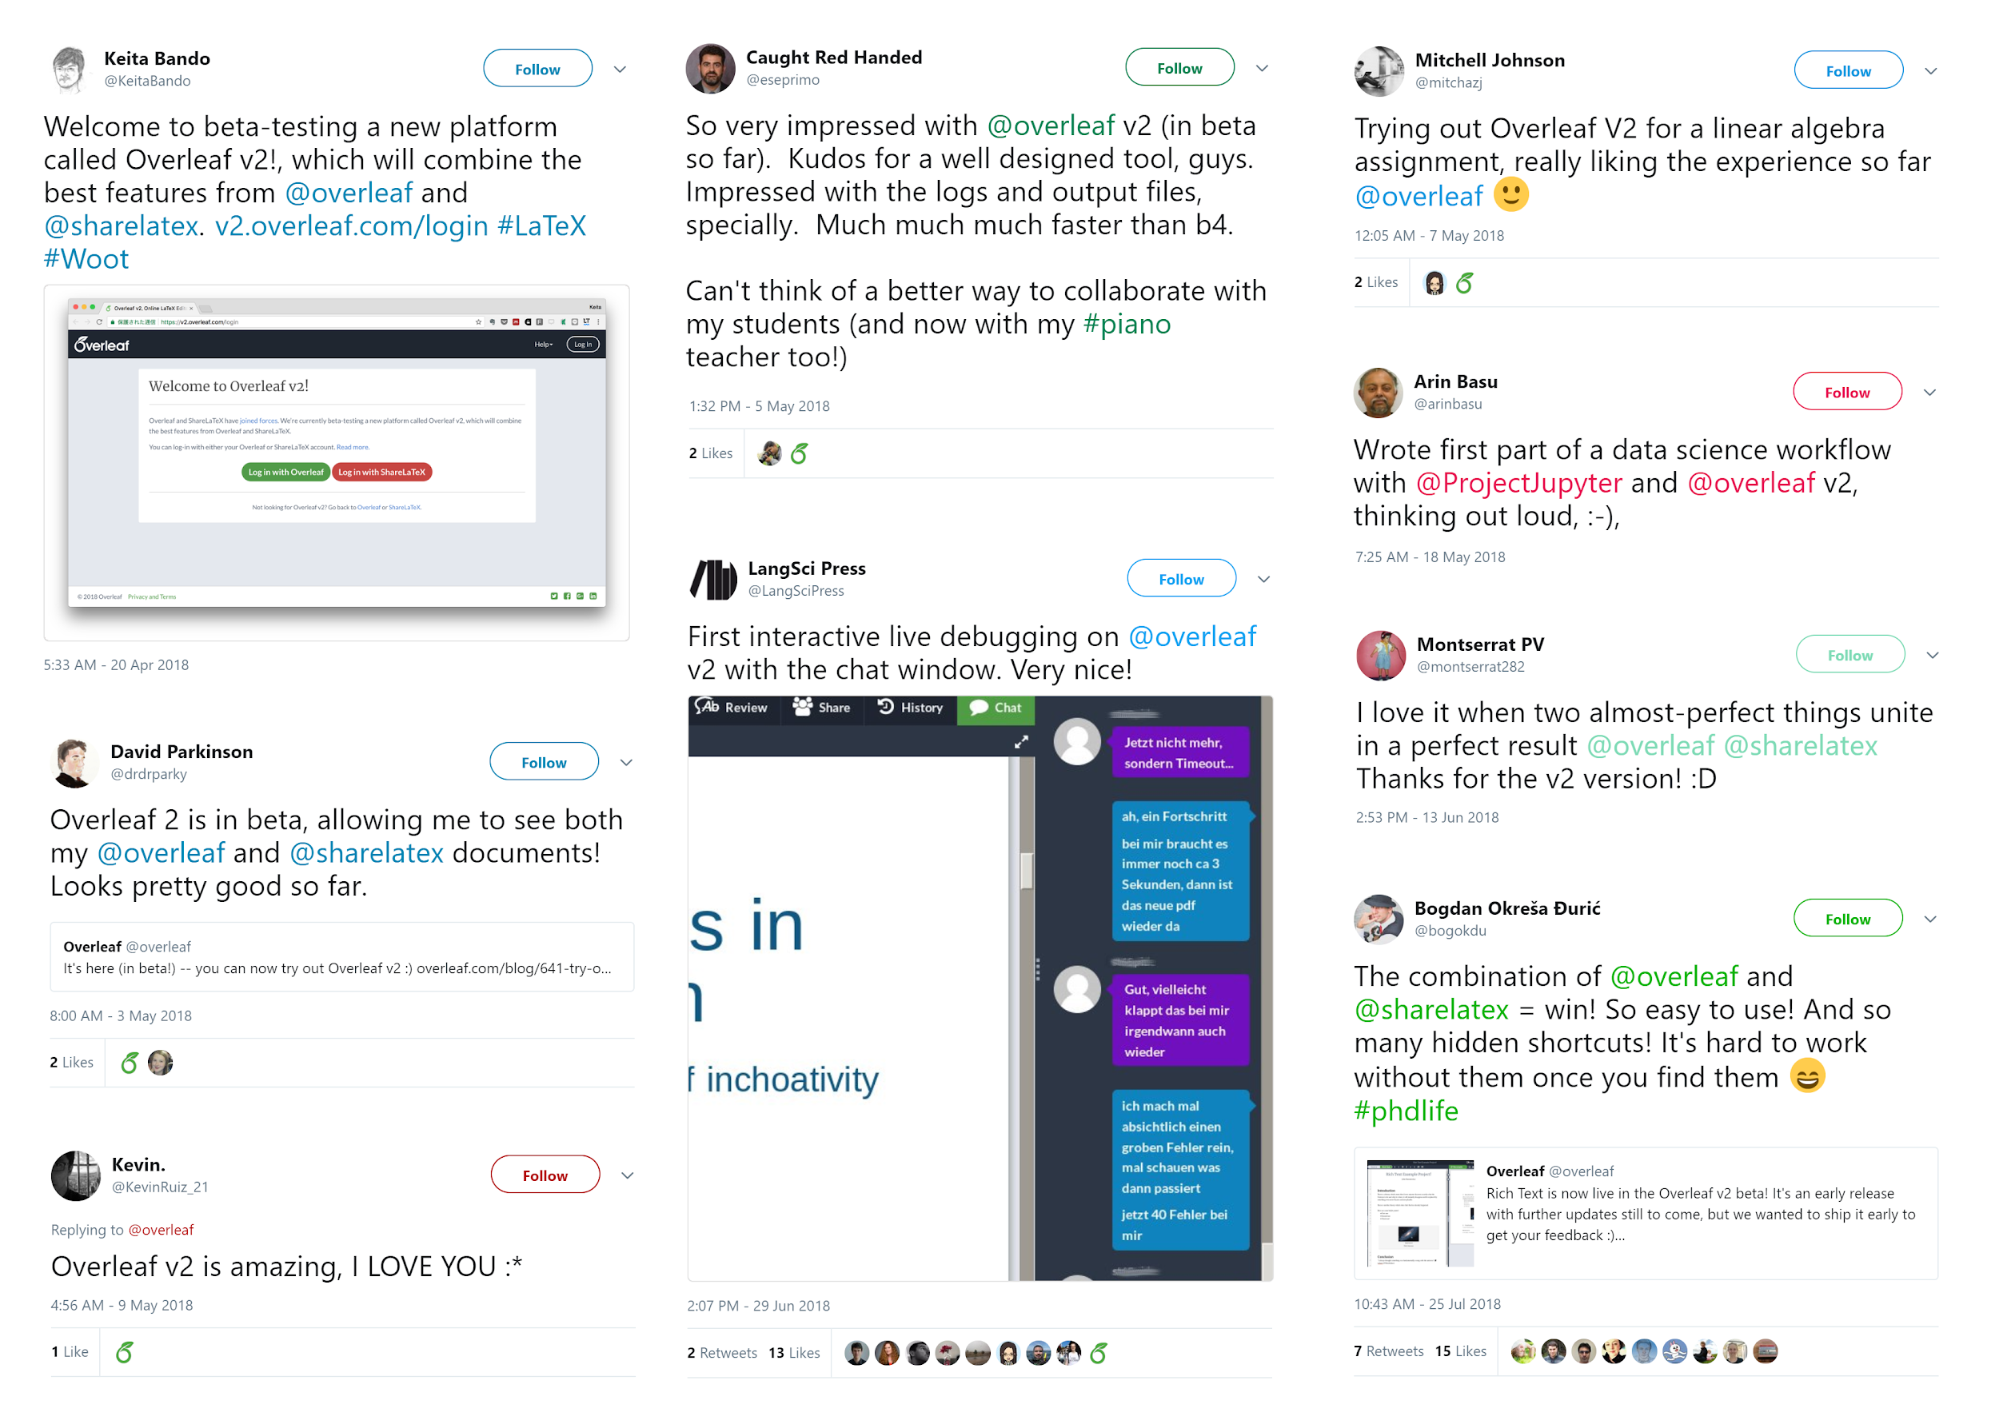 Collage of Tweets mentioning Overleaf V2